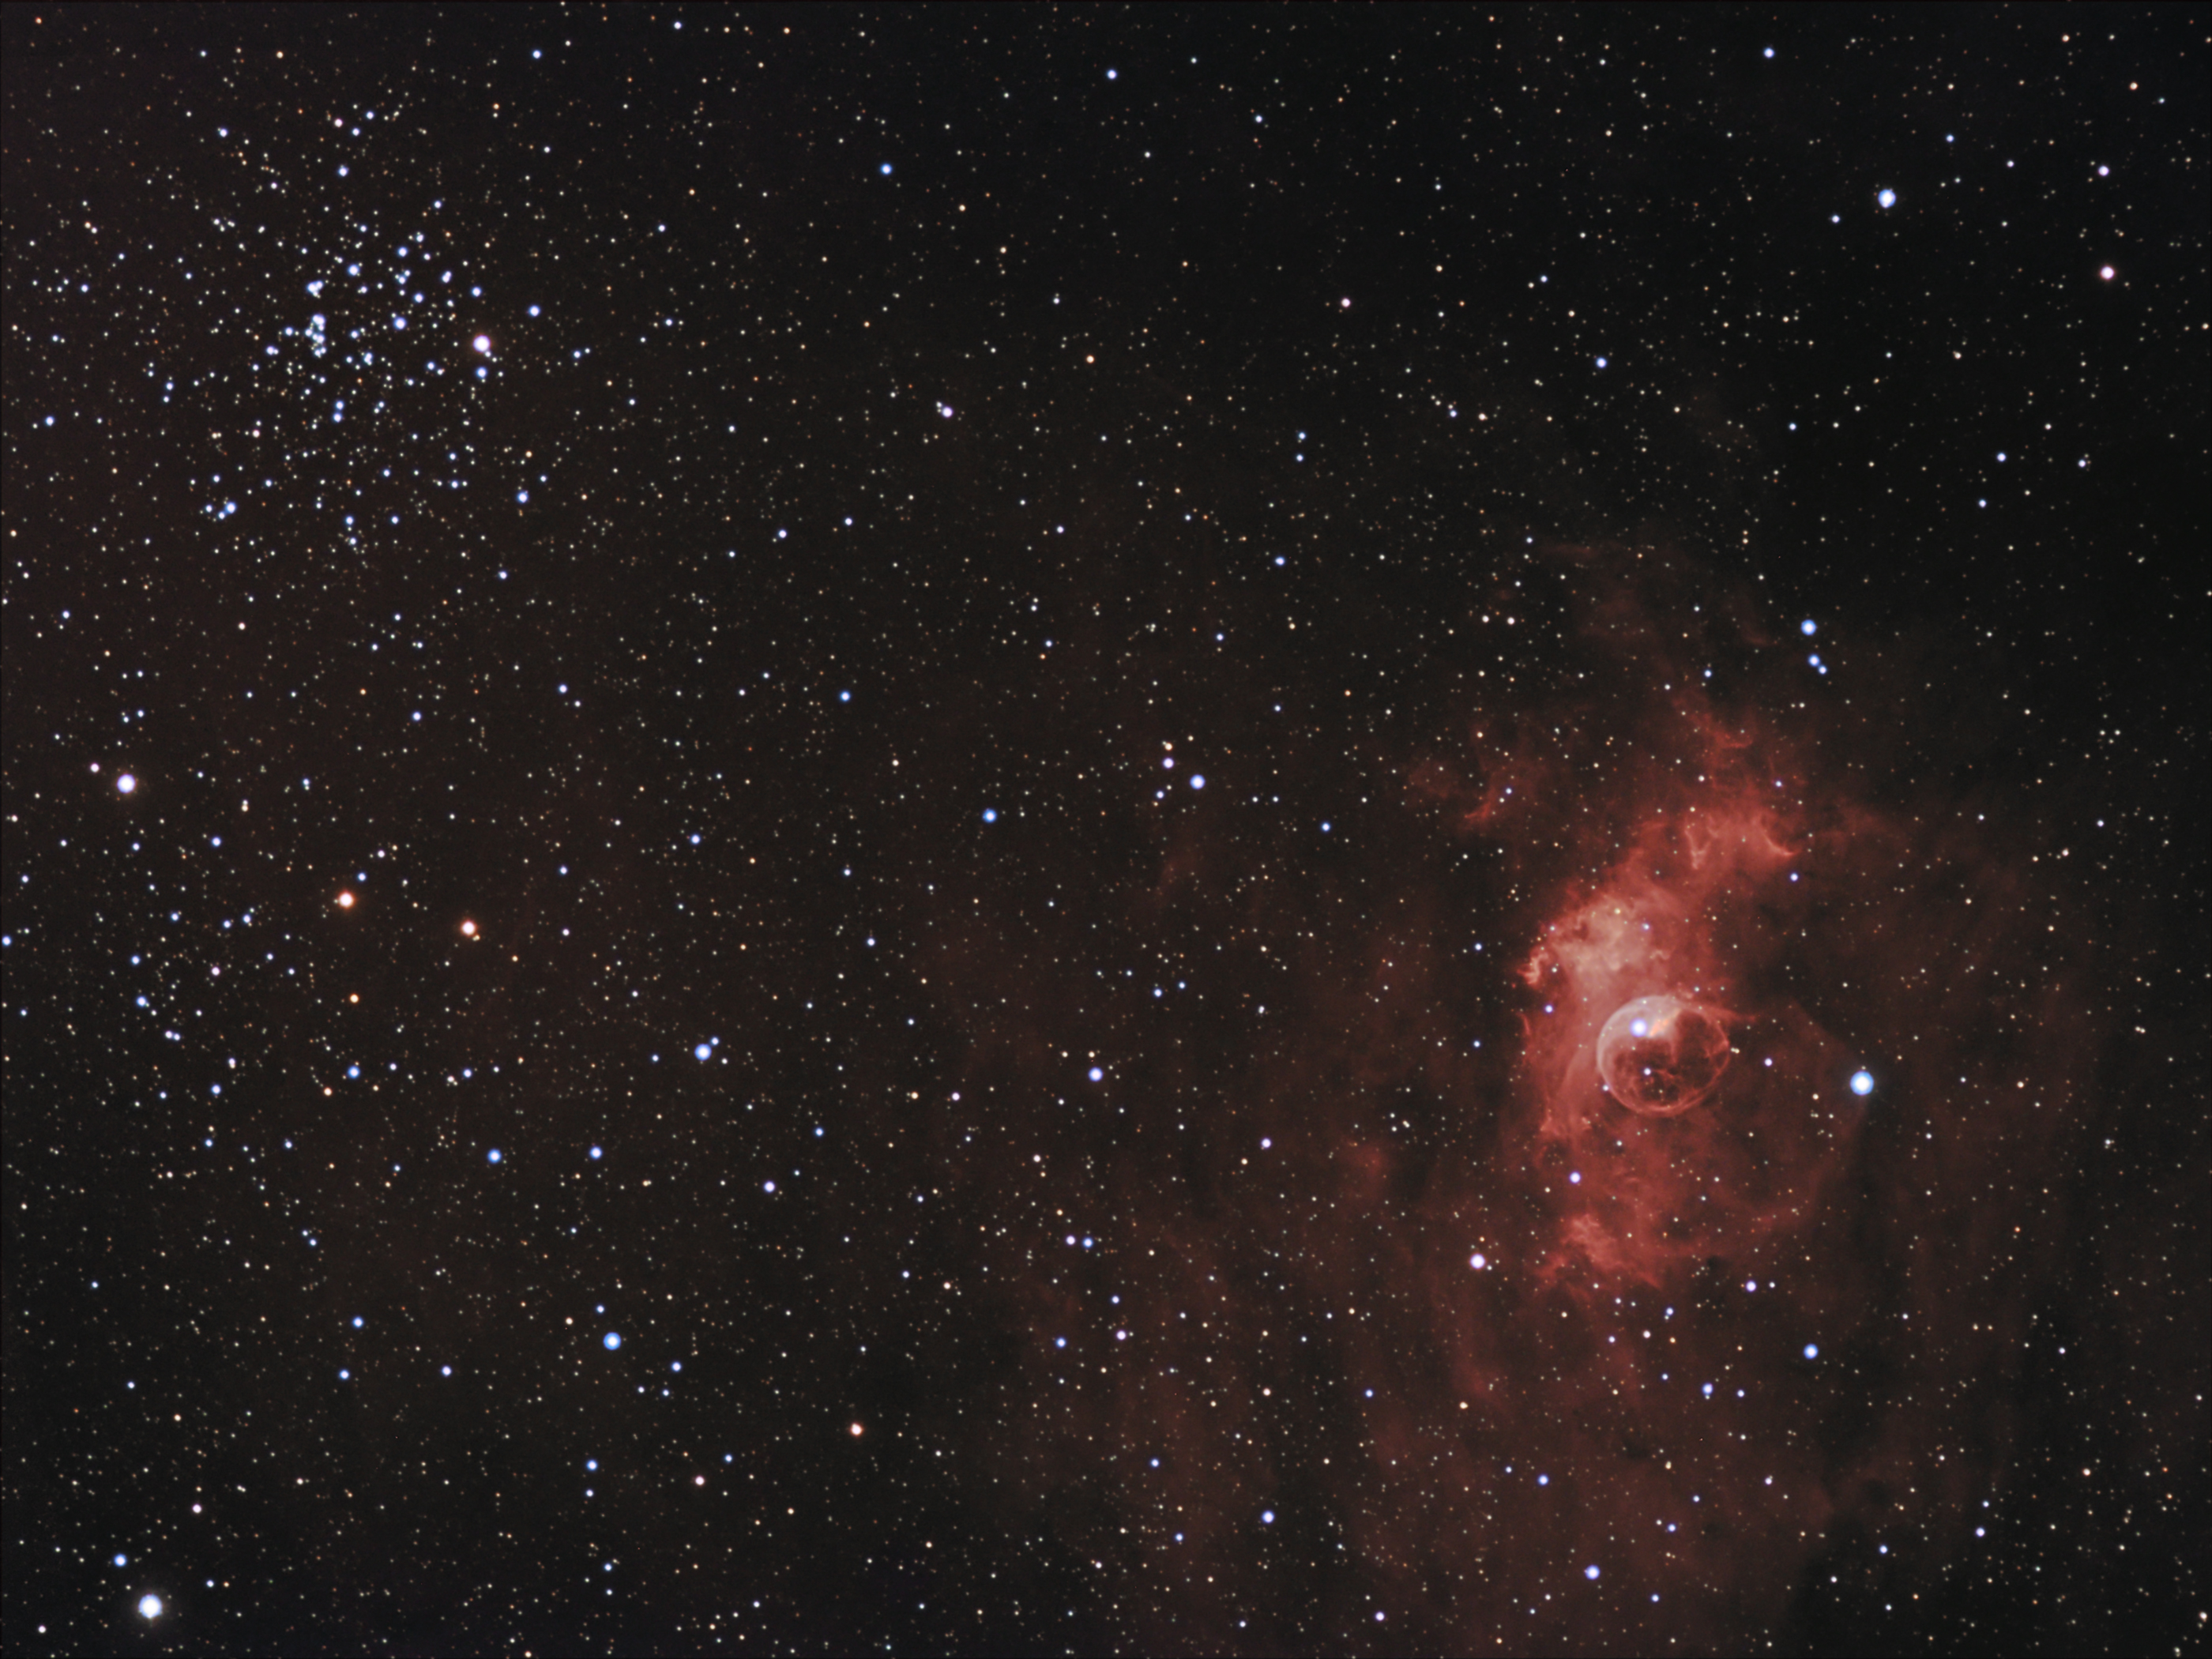 NGC7635 (Bubble nebula) & M52